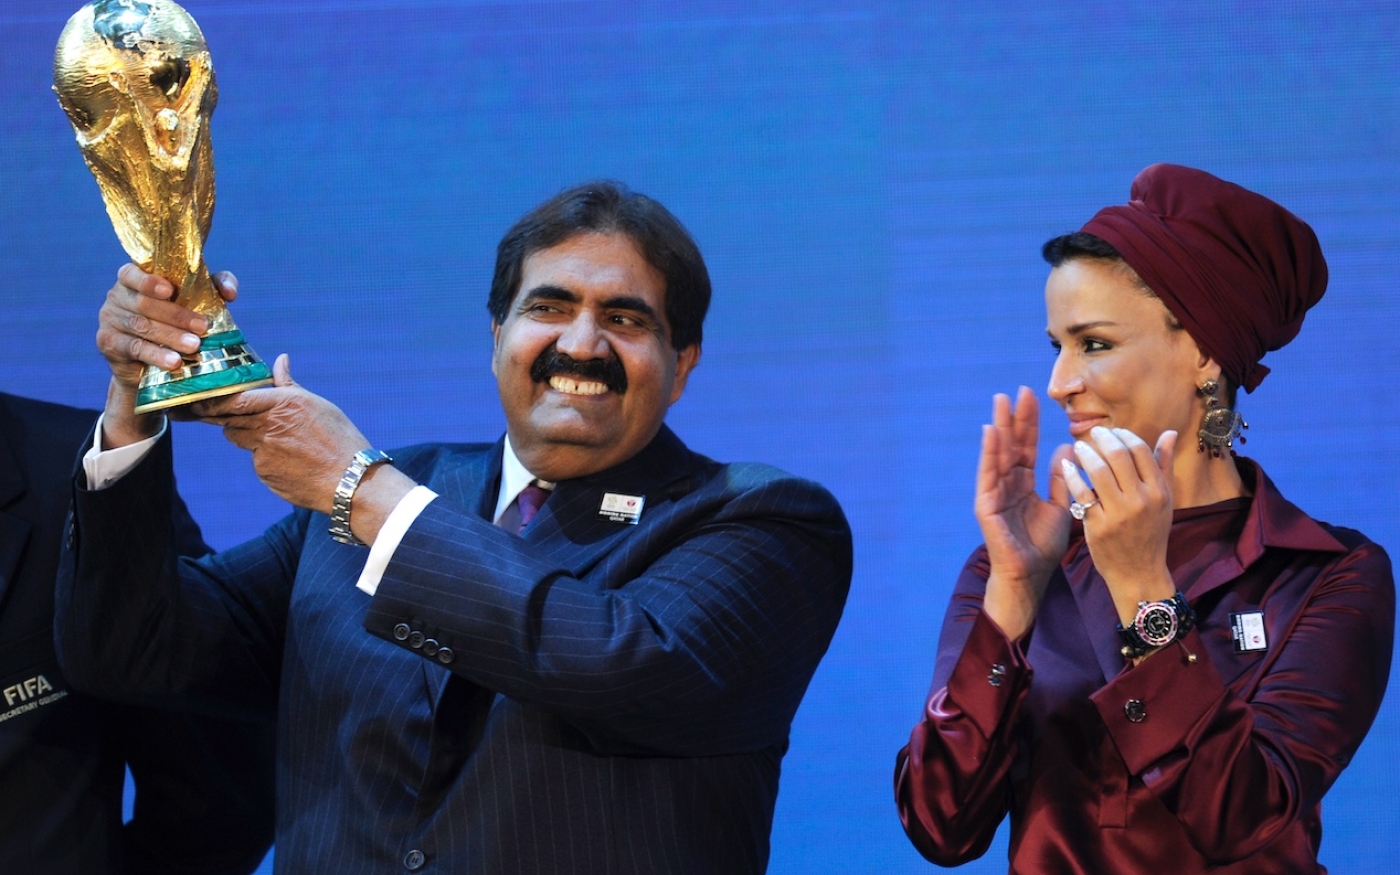 L’émir de l’État du Qatar Sheikh Hamad bin Khalifa Al-Thani (à gauche) pose avec son épouse Sheikha Moza bint Nasser Al-Missned avec le trophée de la Coupe du monde 2022 (AFP)